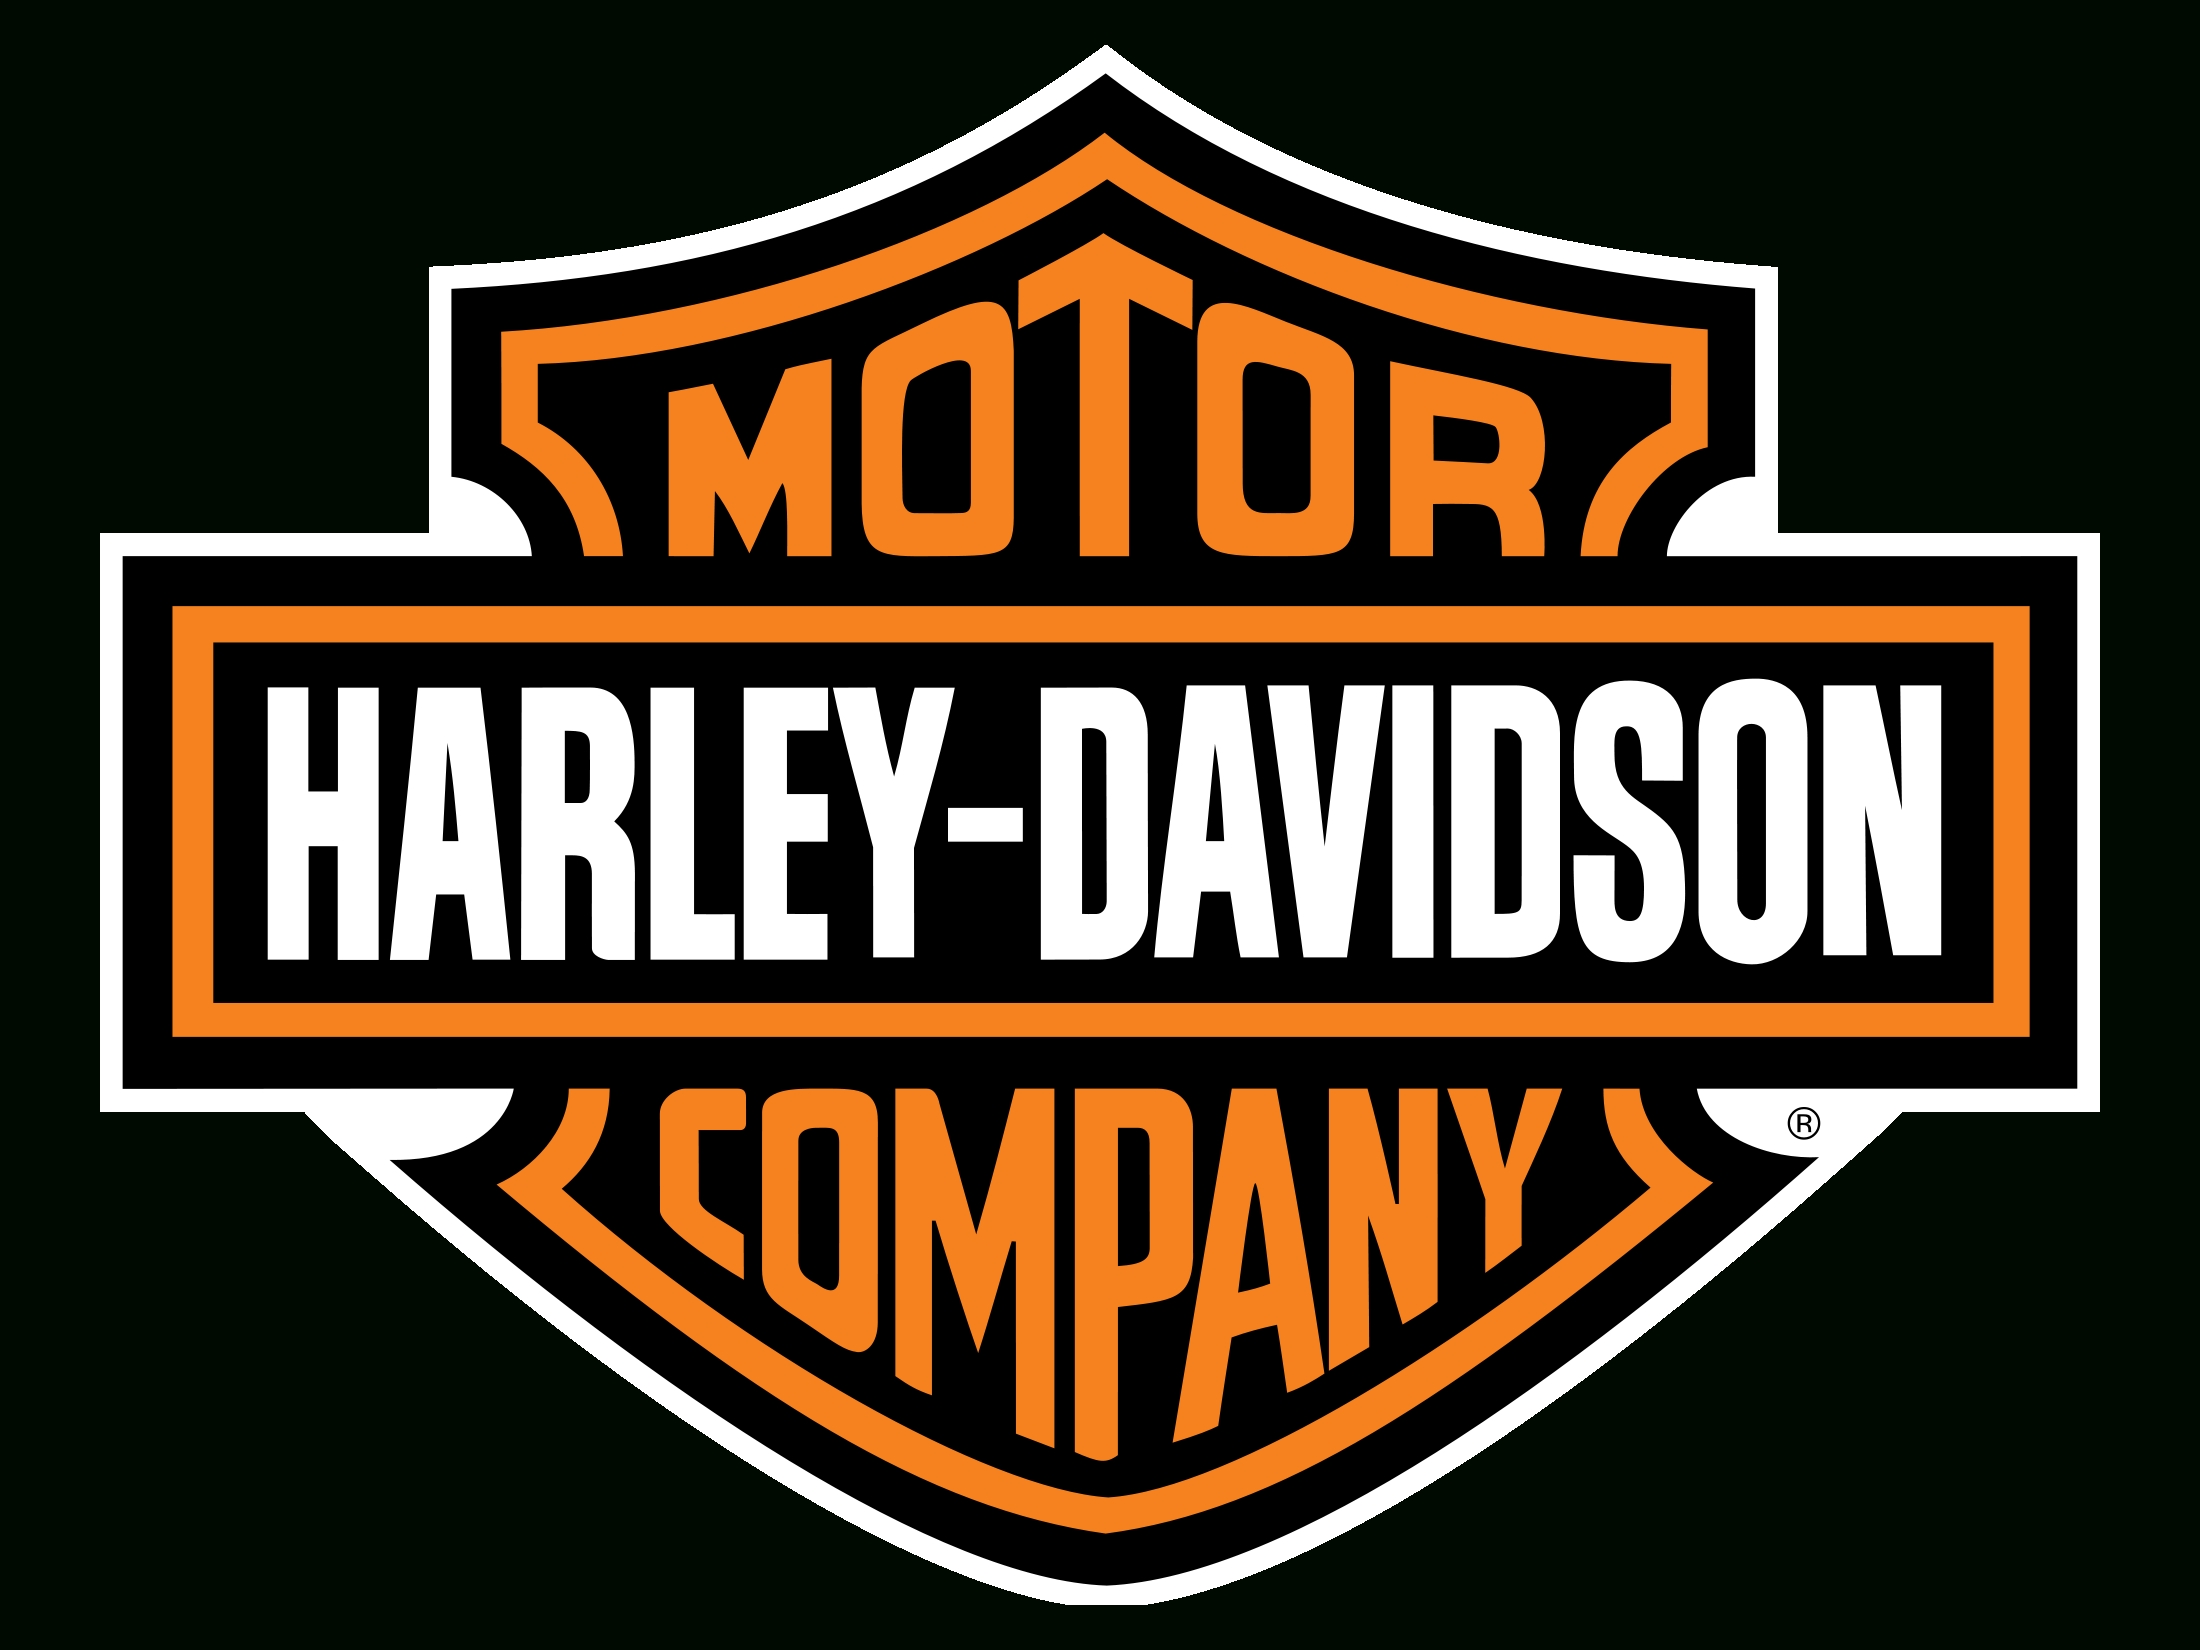 le logo harley-davidson | les marques de voitures